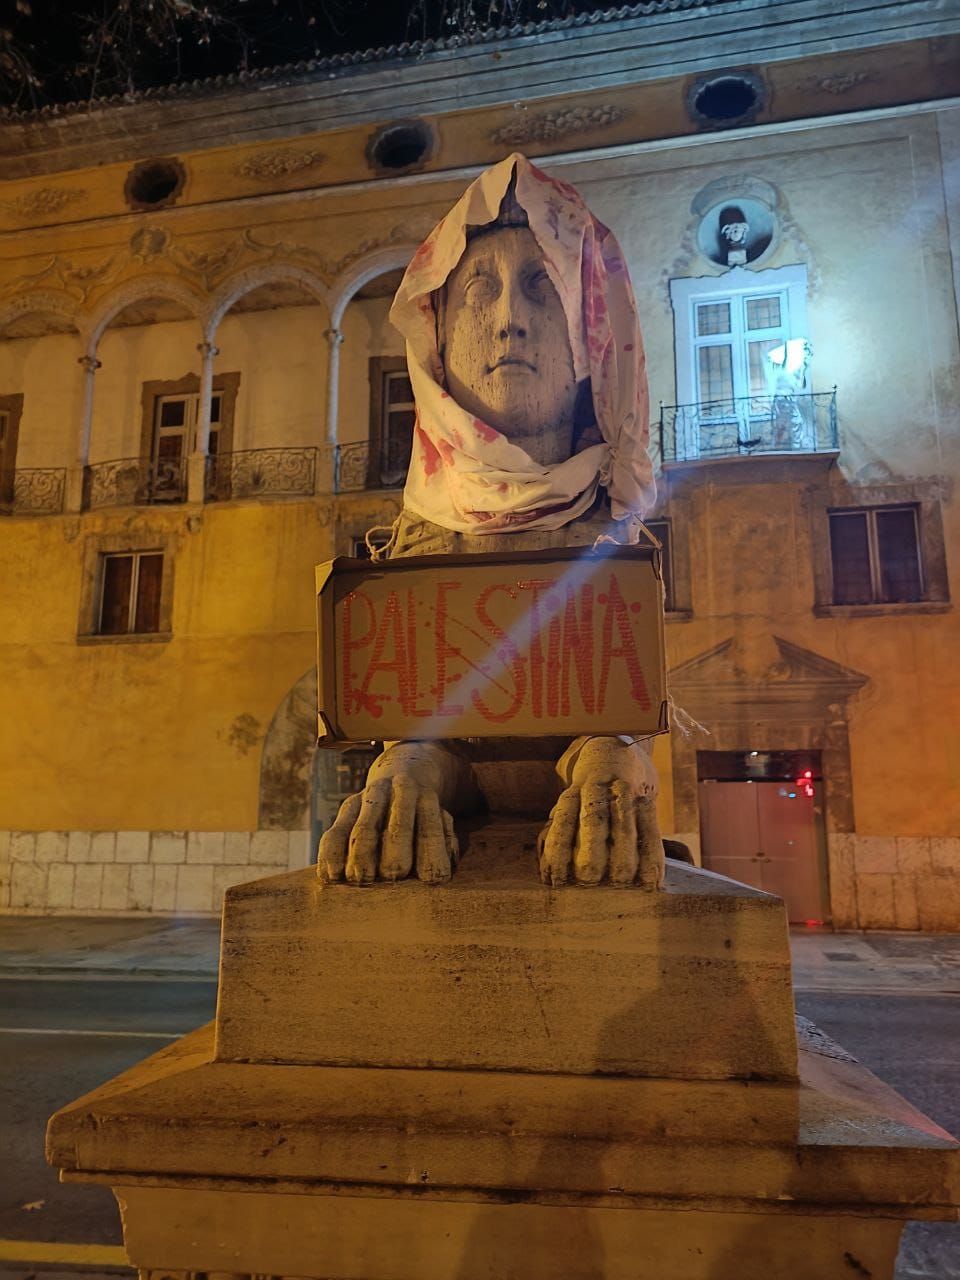 Esculturas de toda Mallorca amanecen con carteles a favor de Palestina: "Paremos el genocidio"